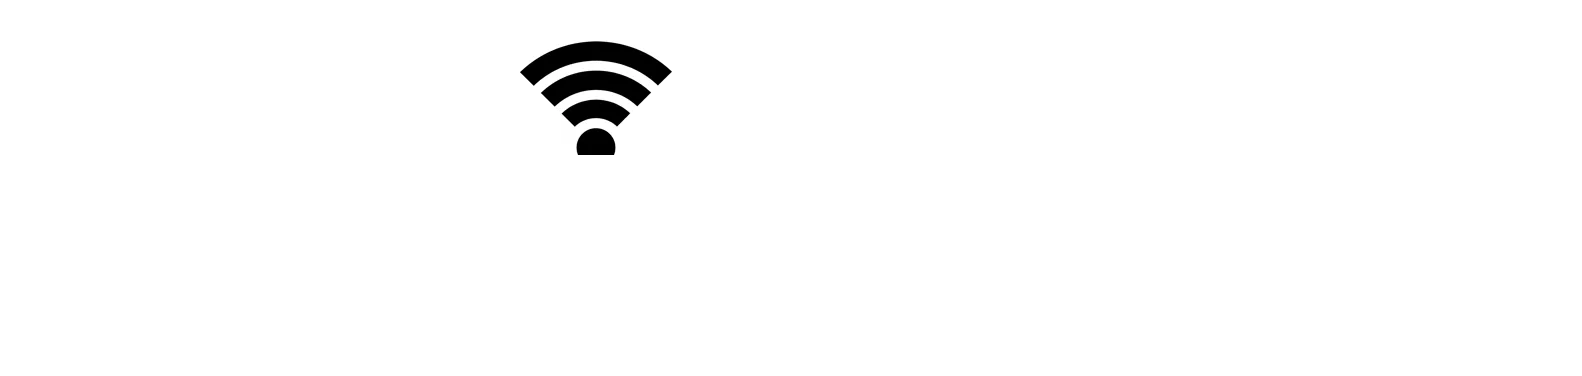 esy smart wifi logo